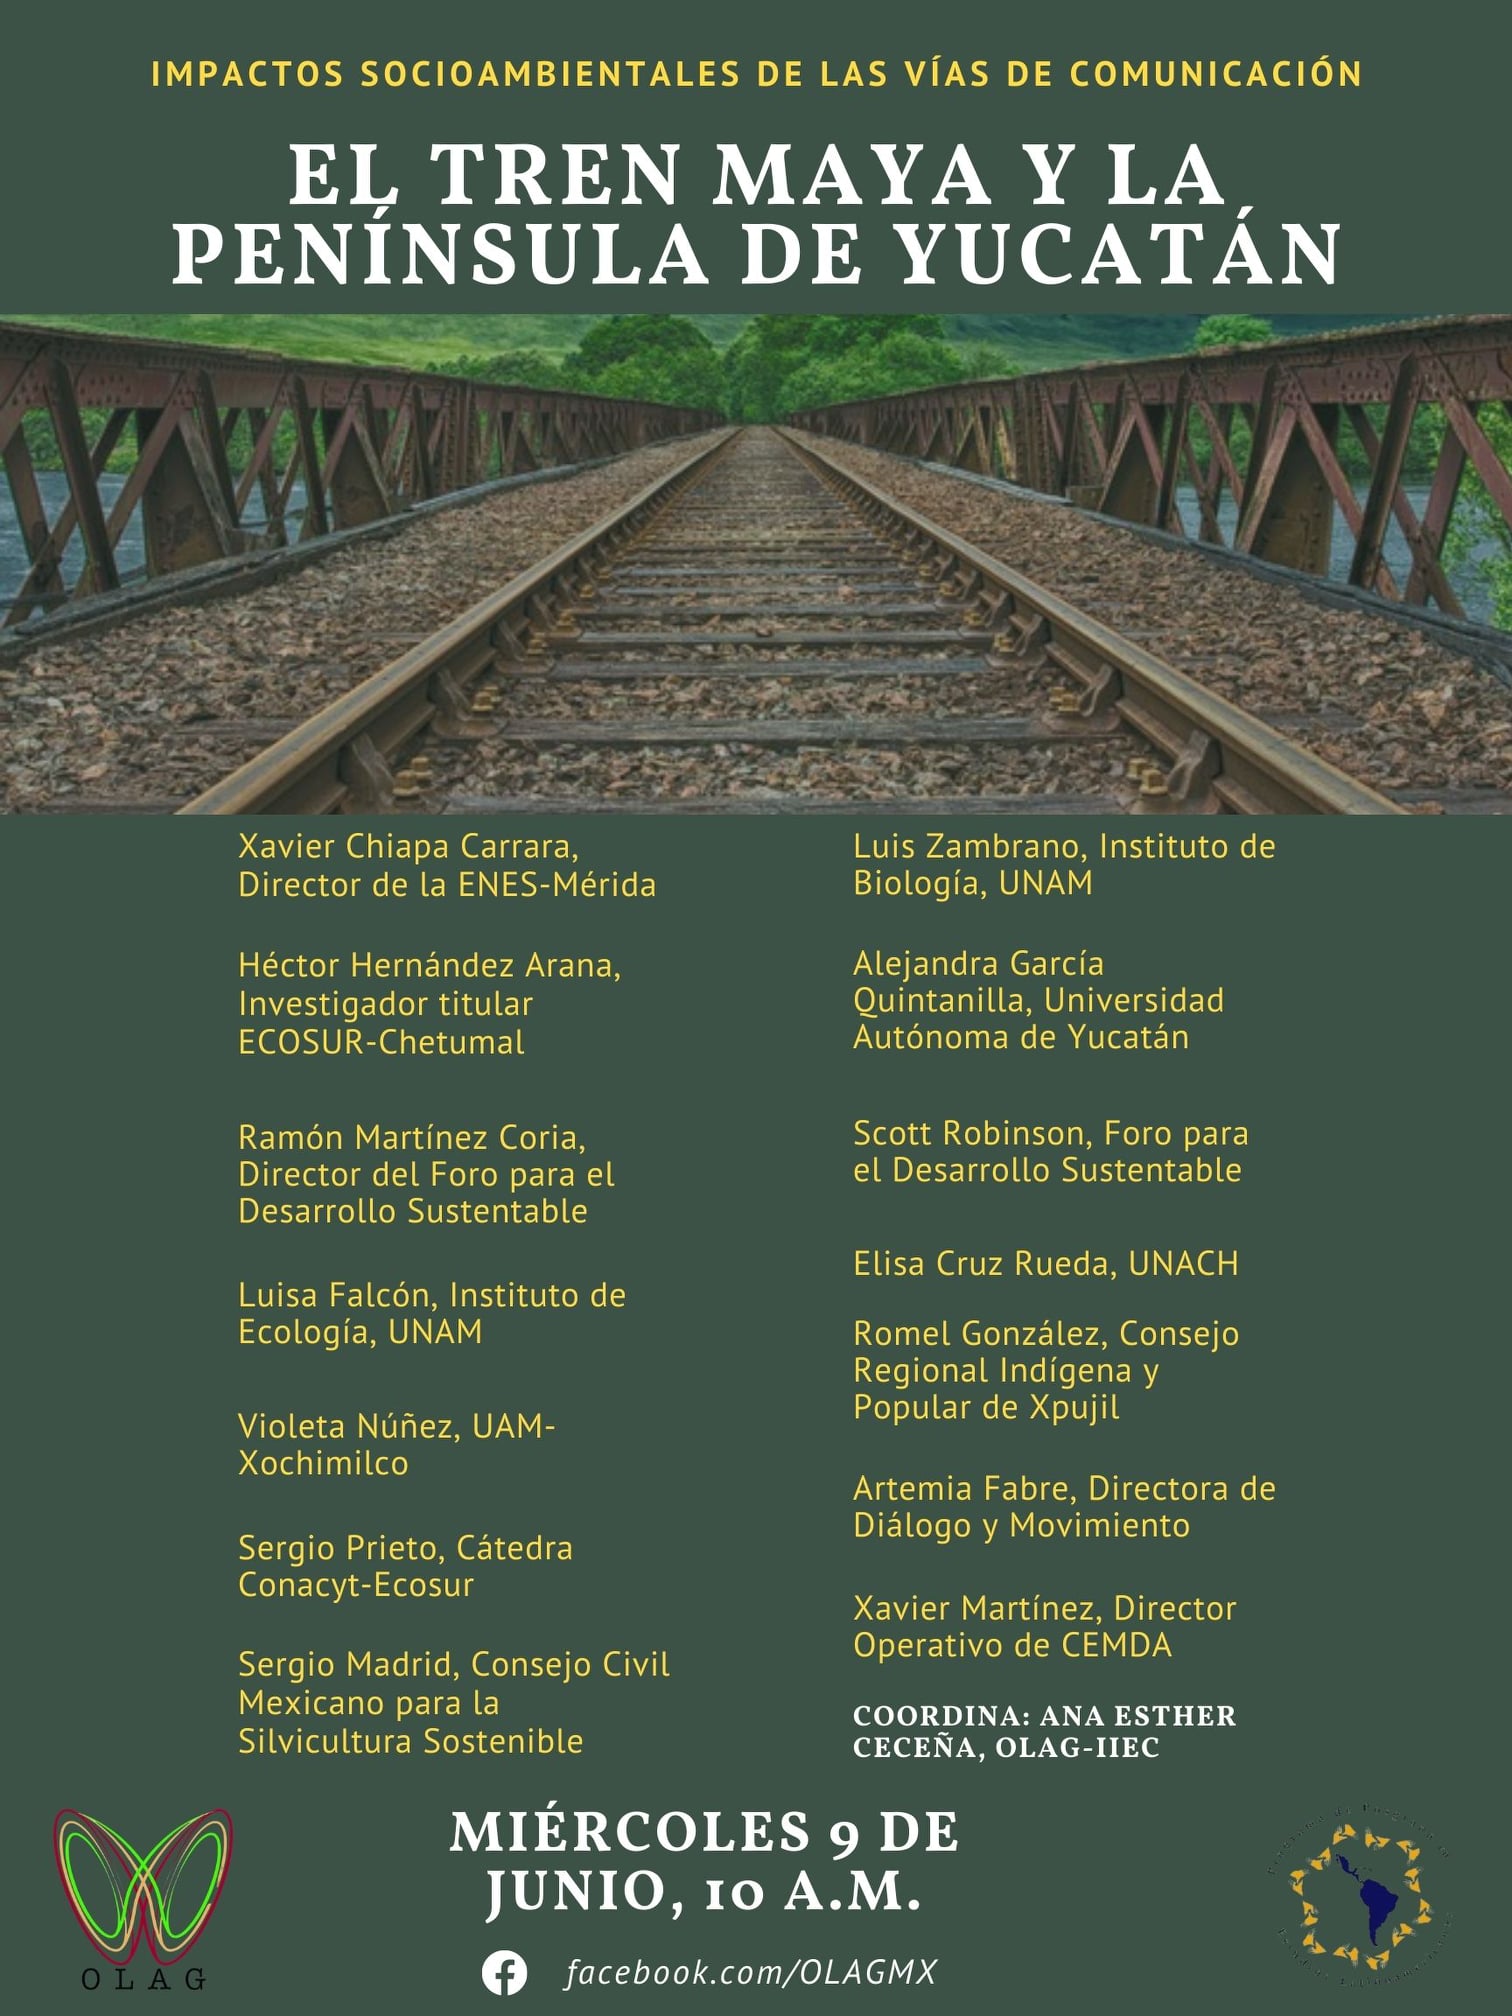 El Tren Maya y la Península de Yucatán. Impactos socioambientales de las vías de comunicación